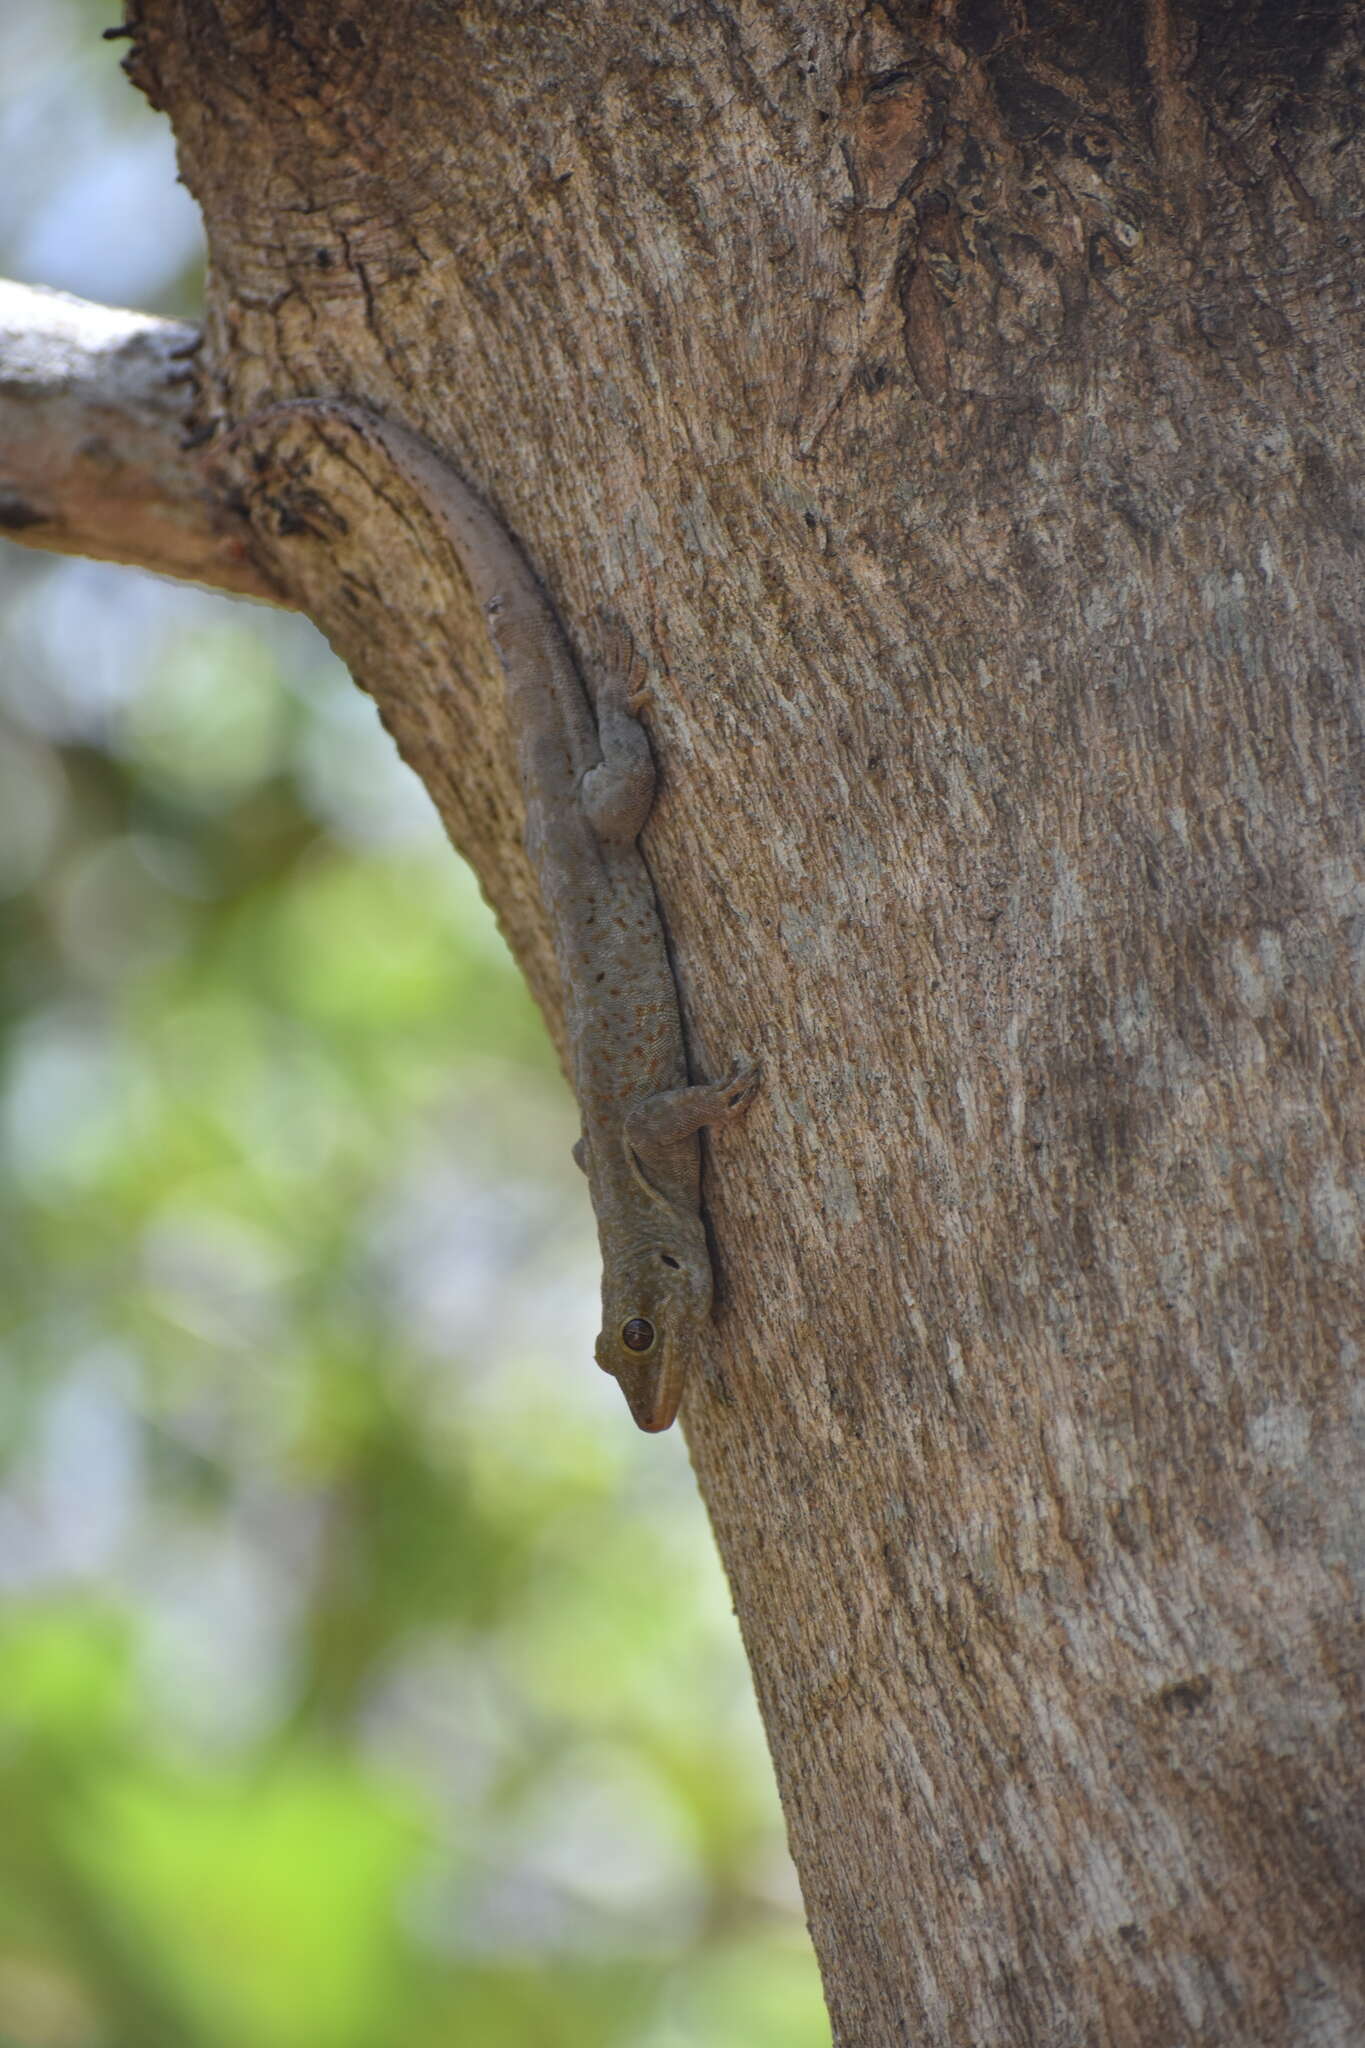 Image of croacking gecko